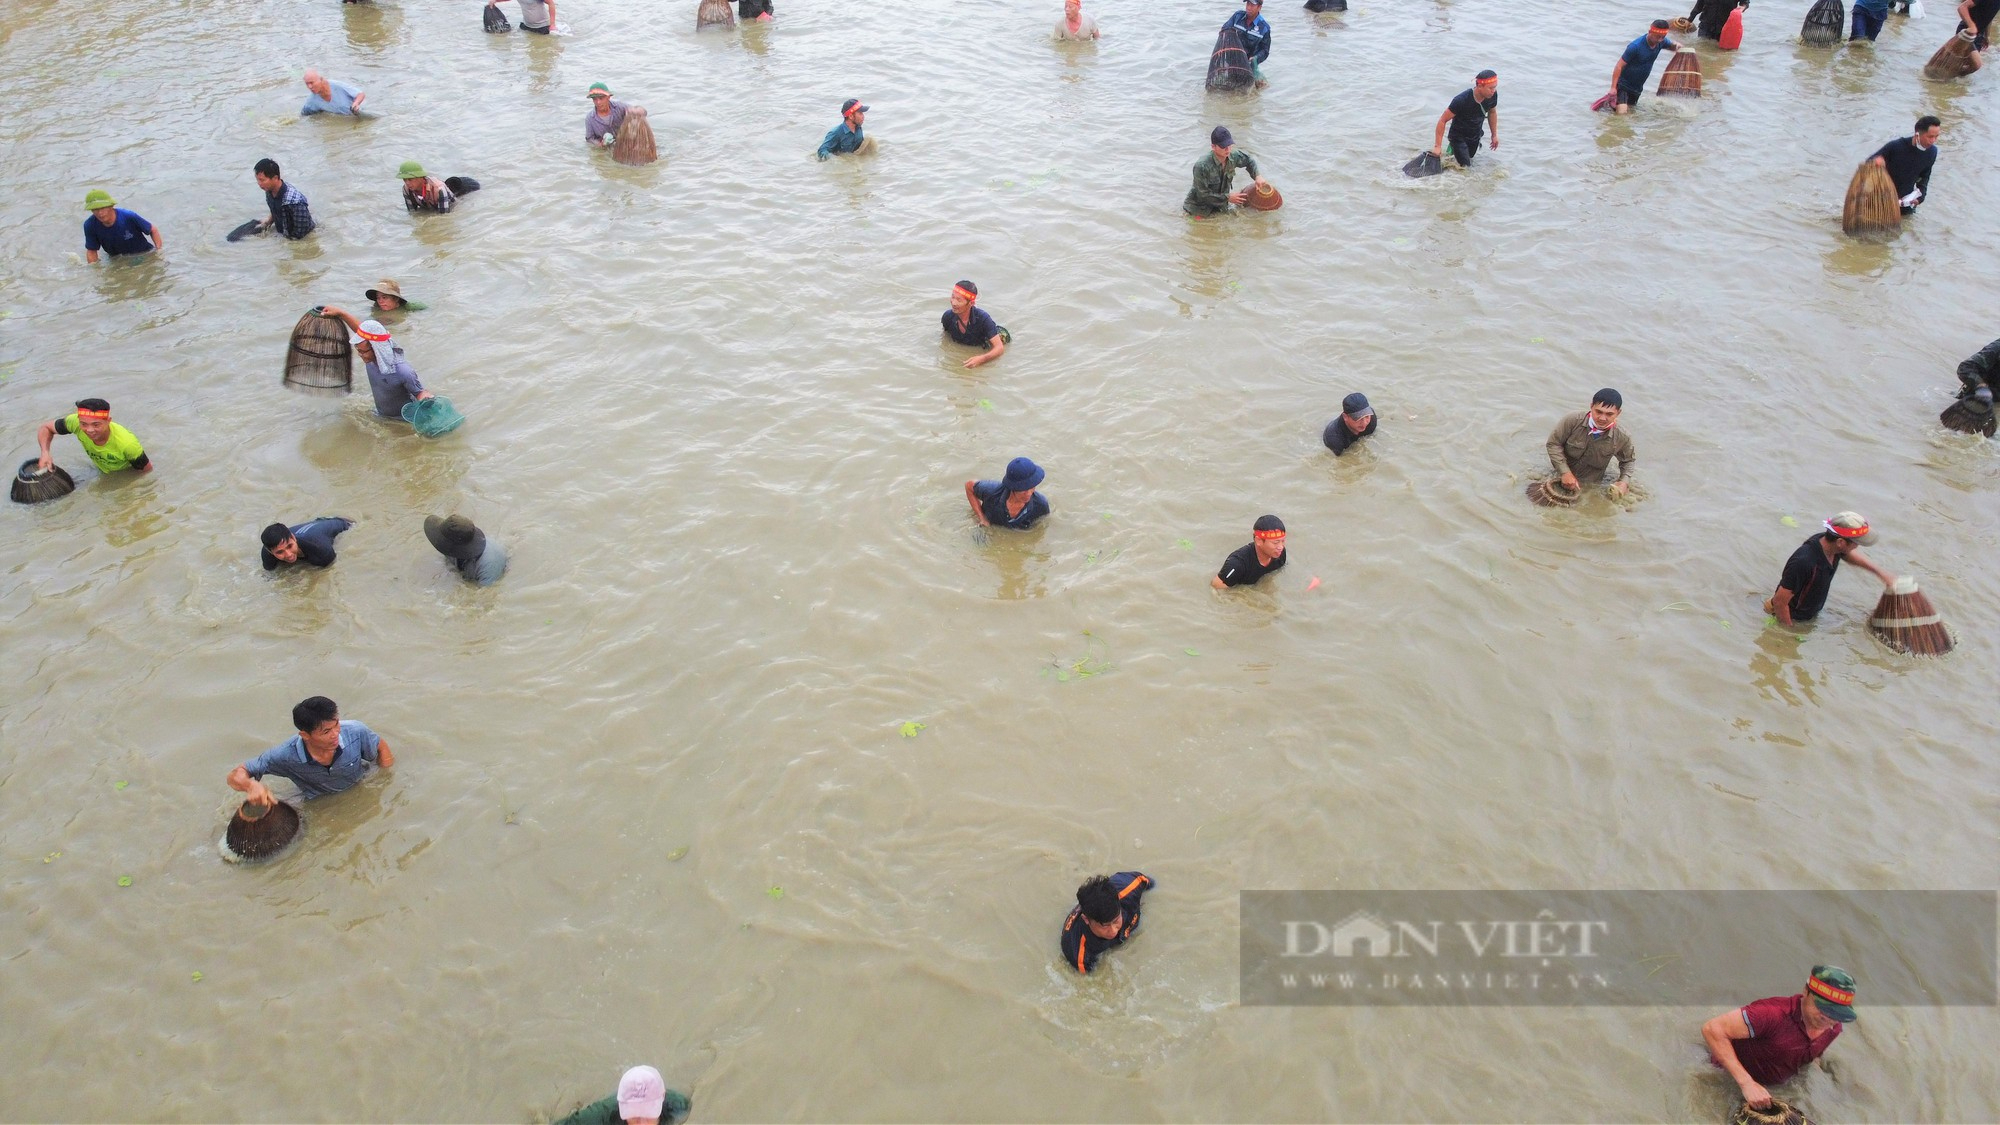 Hà Tĩnh: Hàng nghìn người dân reo hò, lội bùn tham gia Lễ hội bắt cá truyền thống xã Thạch Hưng - Ảnh 6.